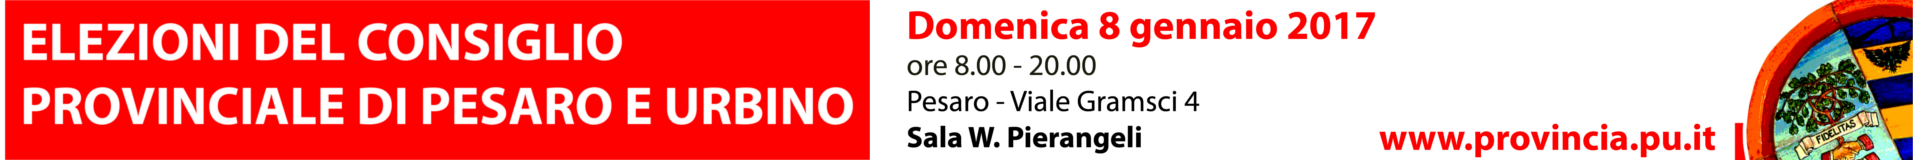 ELEZIONI DEL CONSIGLIO PROVINCIALE - 8 GENNAIO 2017 - dalle 8.00 alle 20.00 - Pesaro Viale Gramsci, 4 - Sala W. Pierangeli